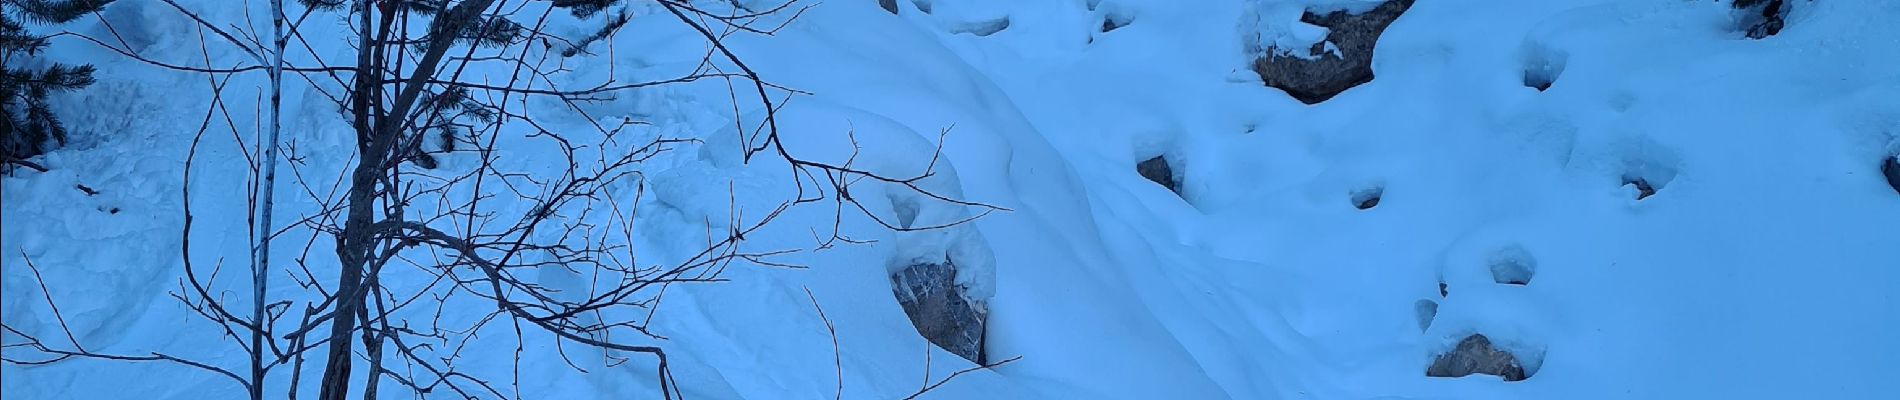 Percorso Sci alpinismo Cervières - Crêtes de la lauze ou voyage dans les entrailles de terre rouge - Photo